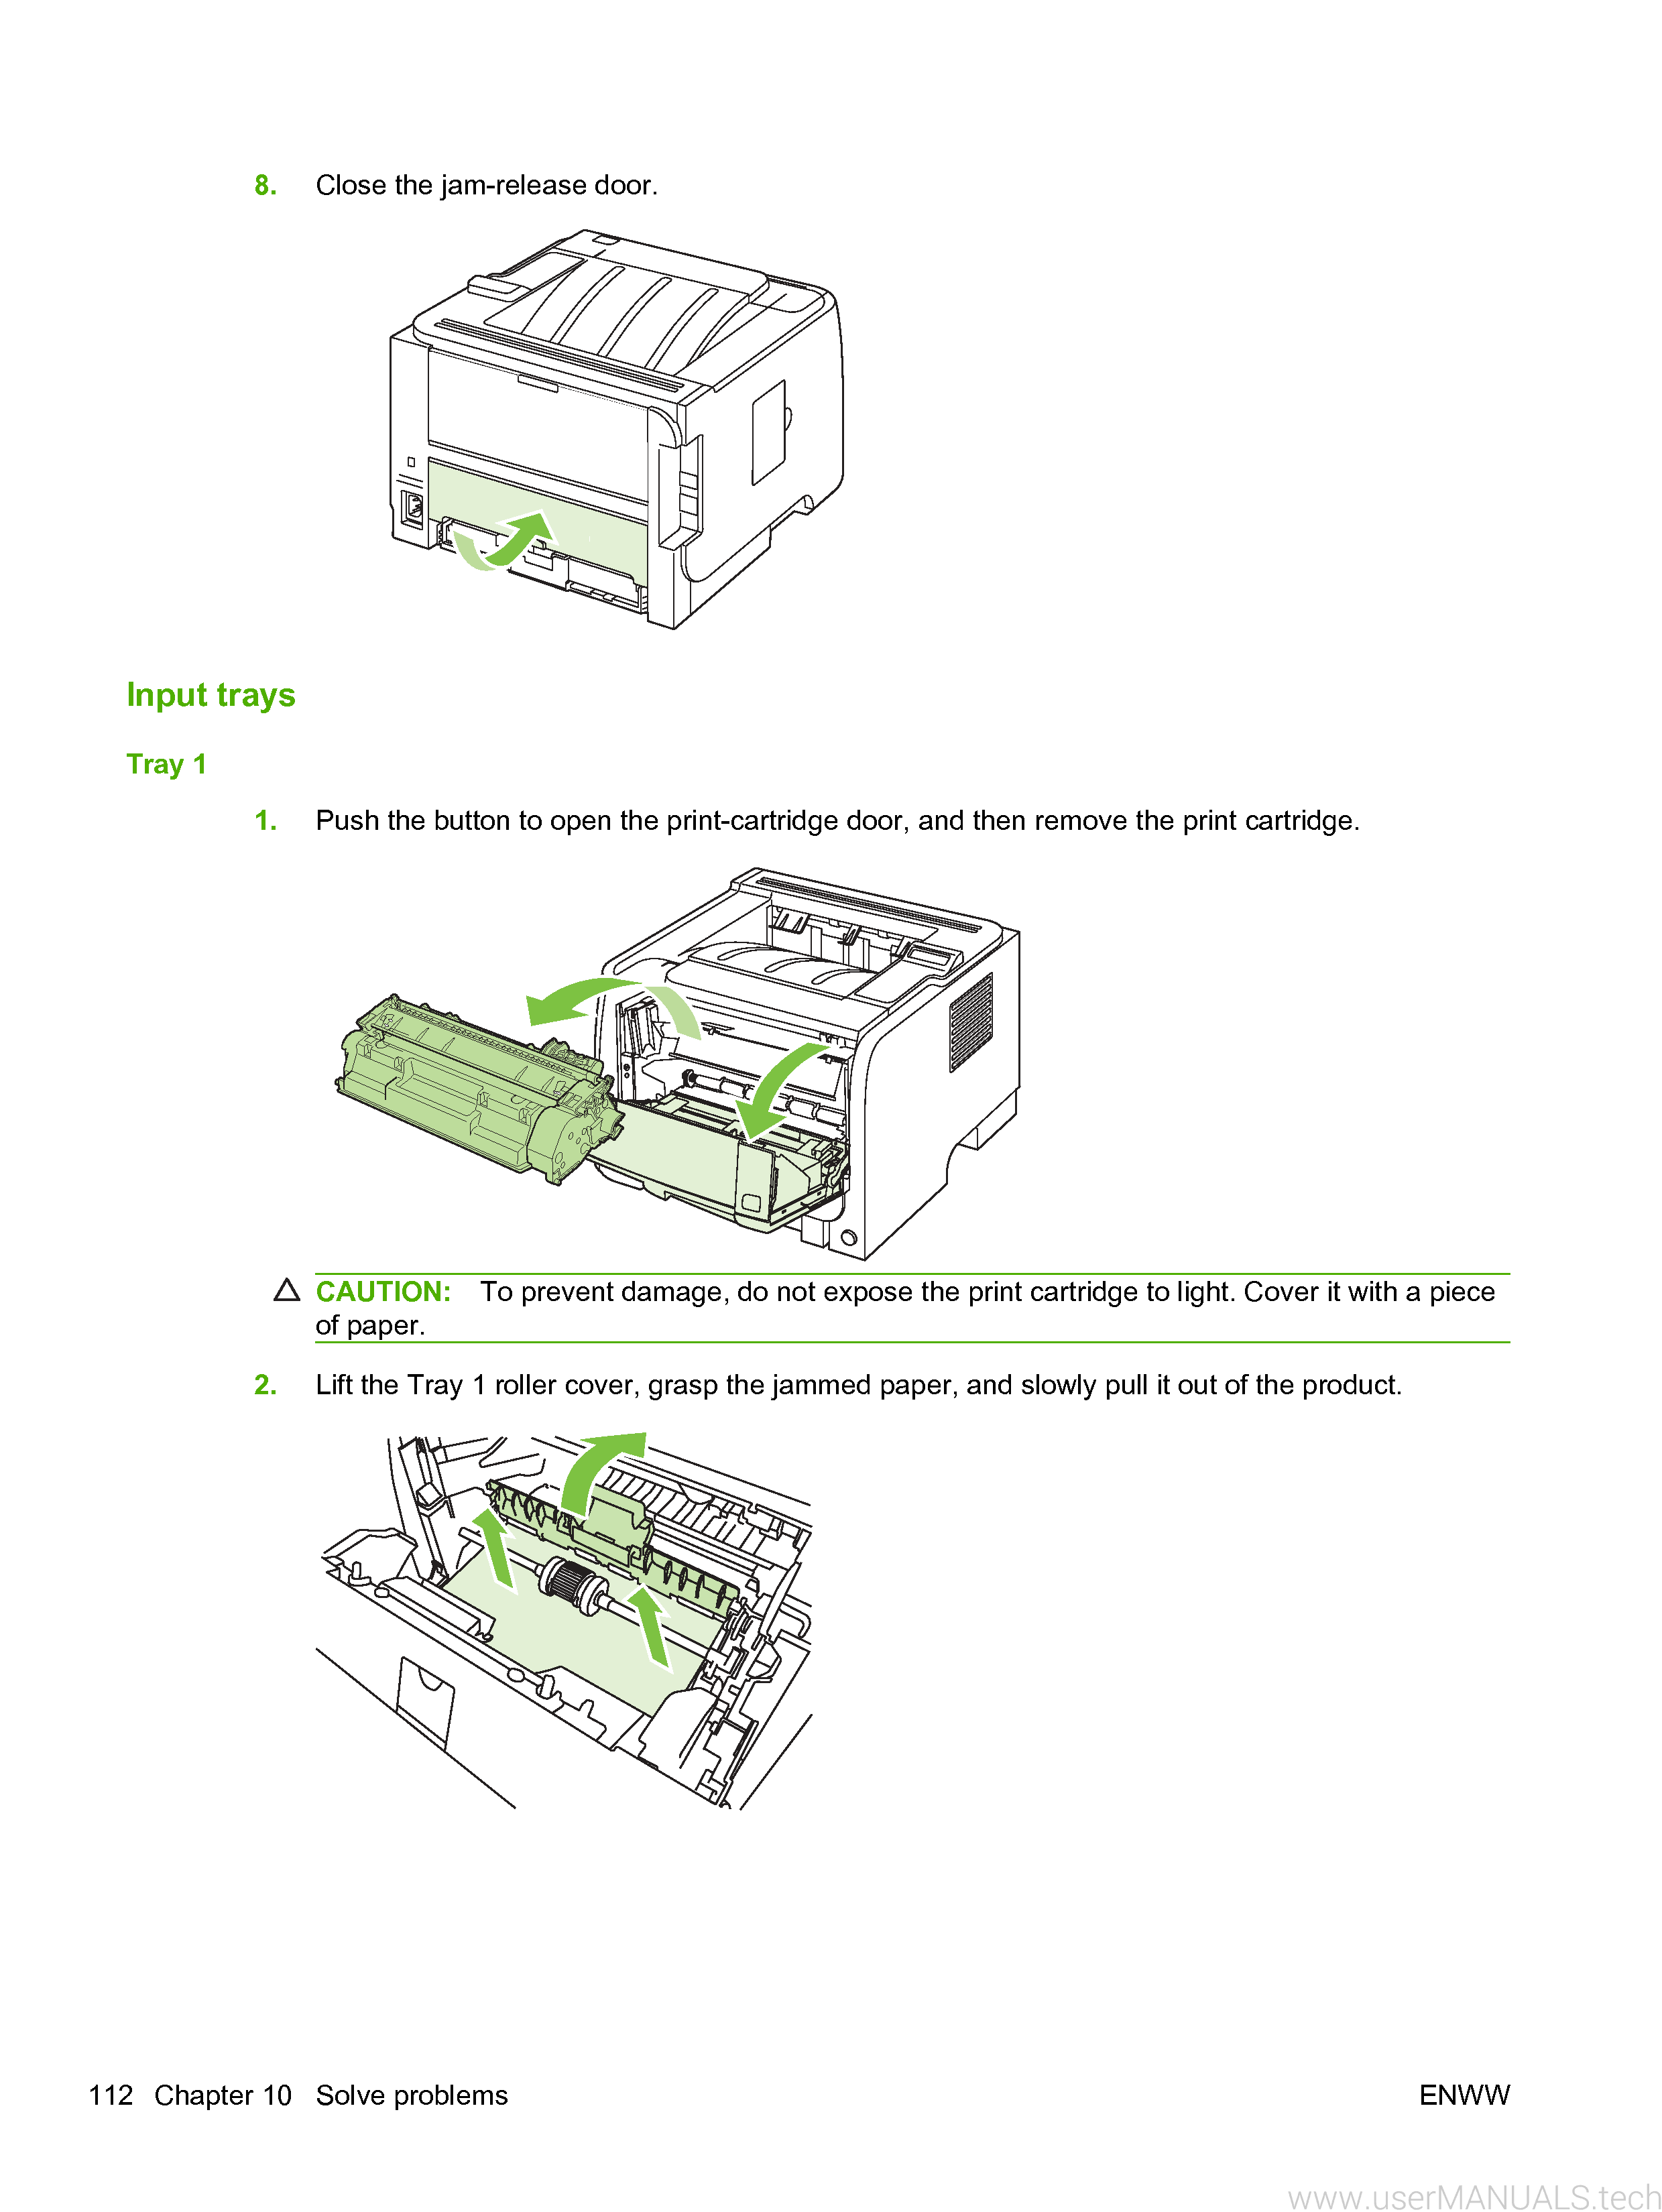 hp laserjet p2055dn printer problems